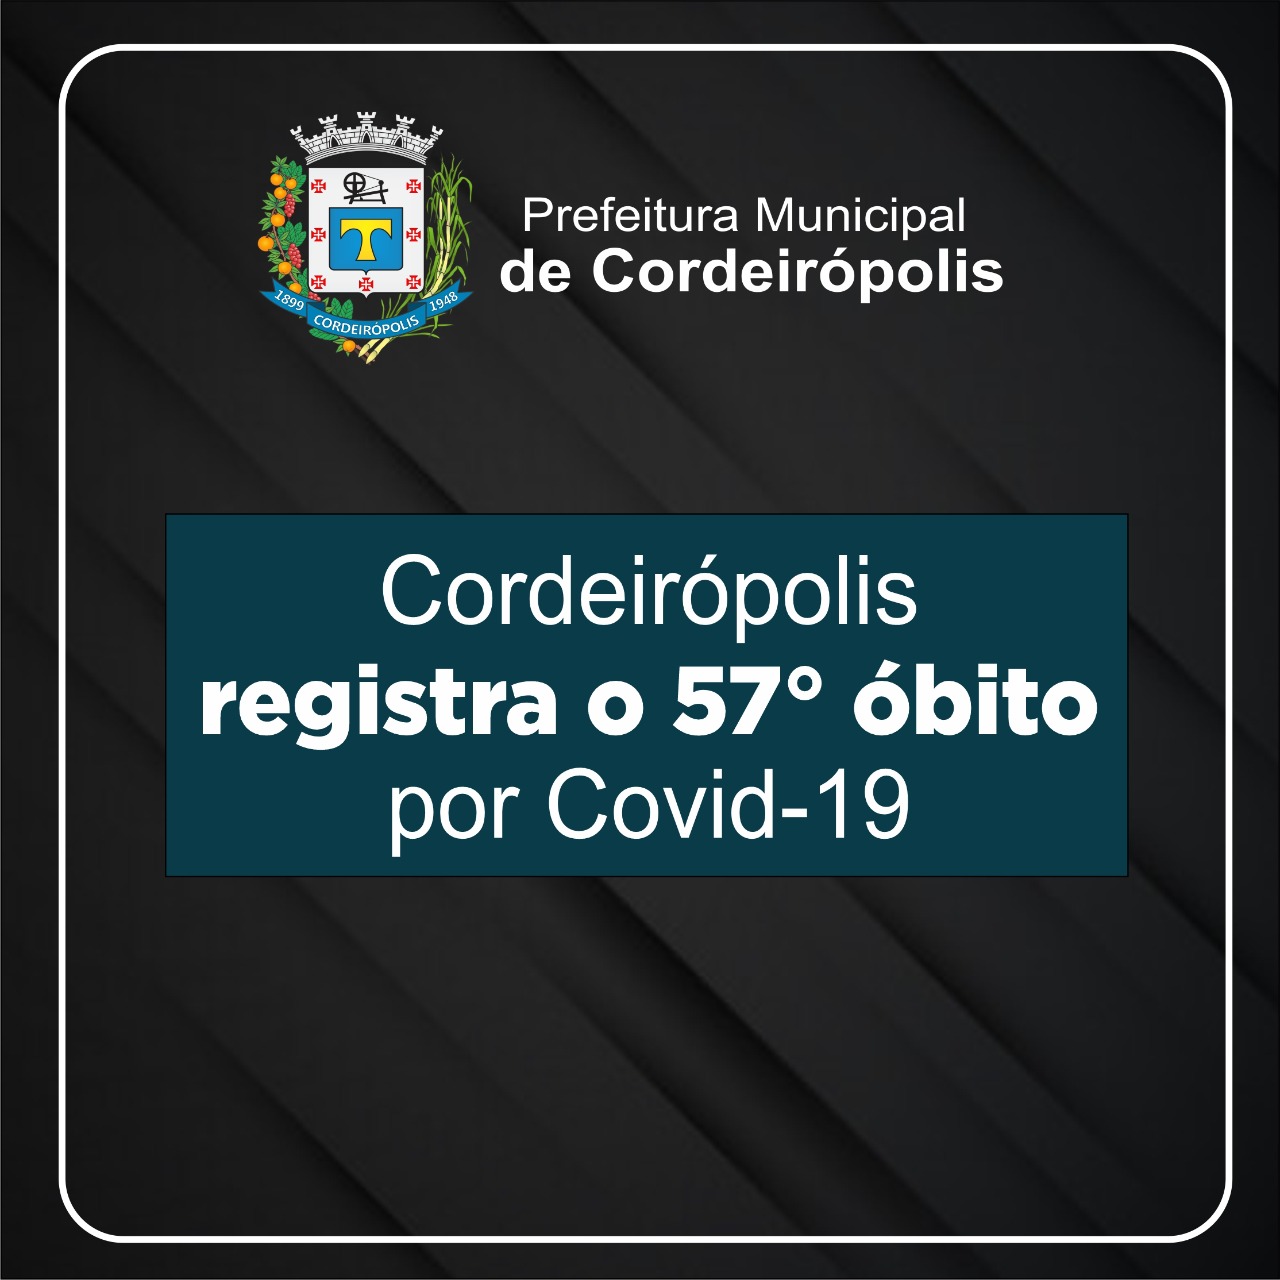 Cordeirópolis registra o 57° óbito decorrente a Covid